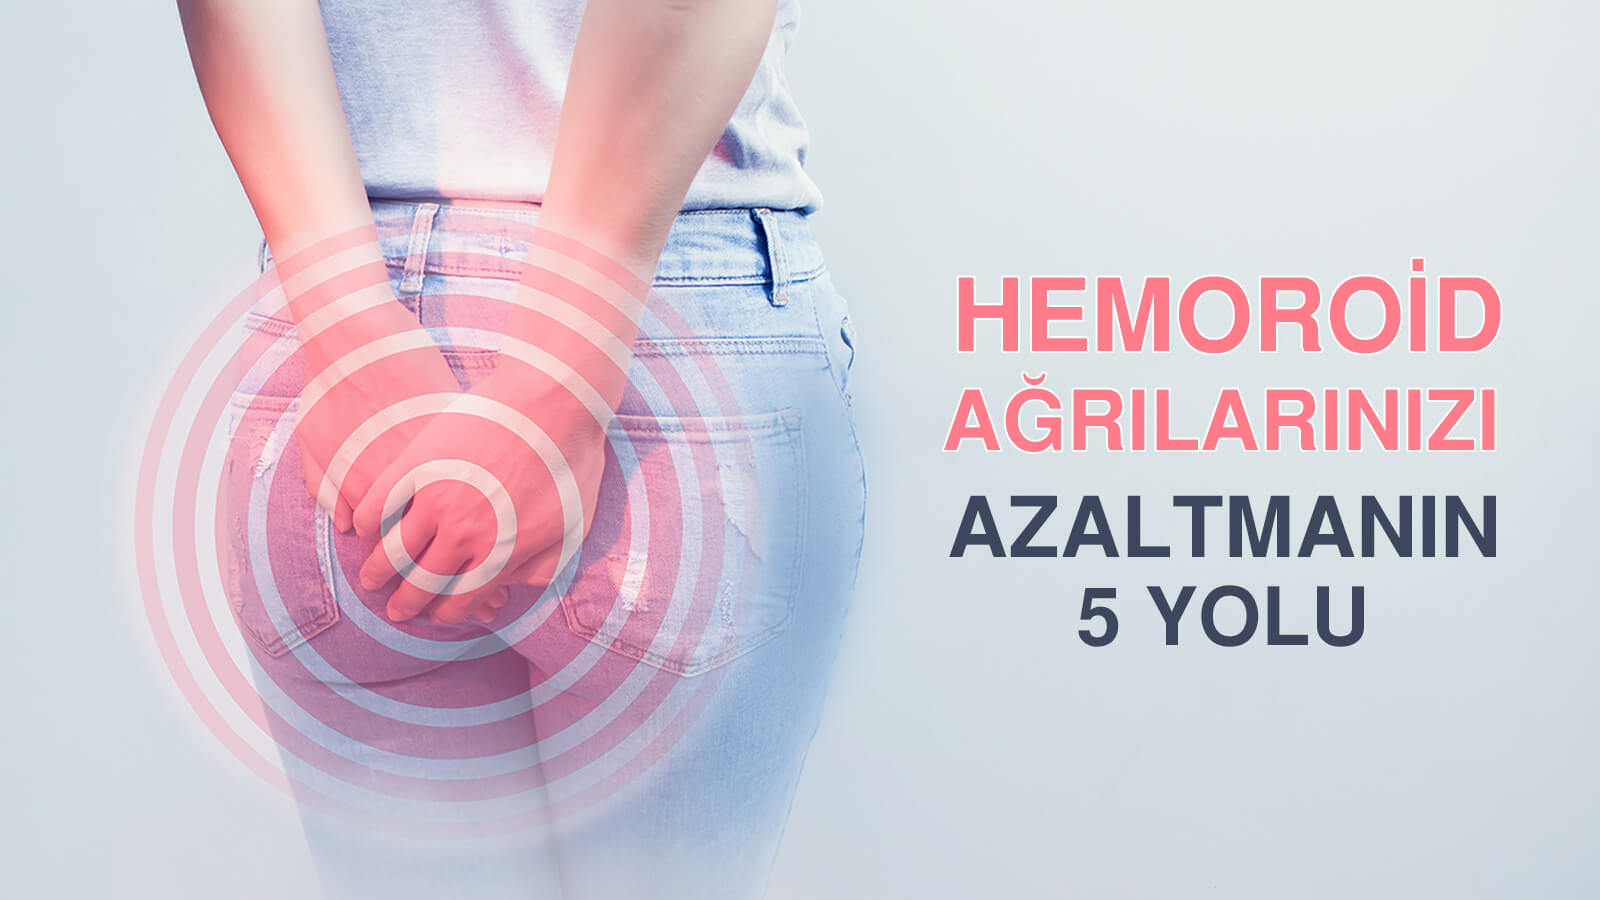 Dış Hemoroide Pıhtı Oturması ‘’tromboze hemoroid’ Durumunda Ağrılarınızı Azaltmanın 5 Yolu